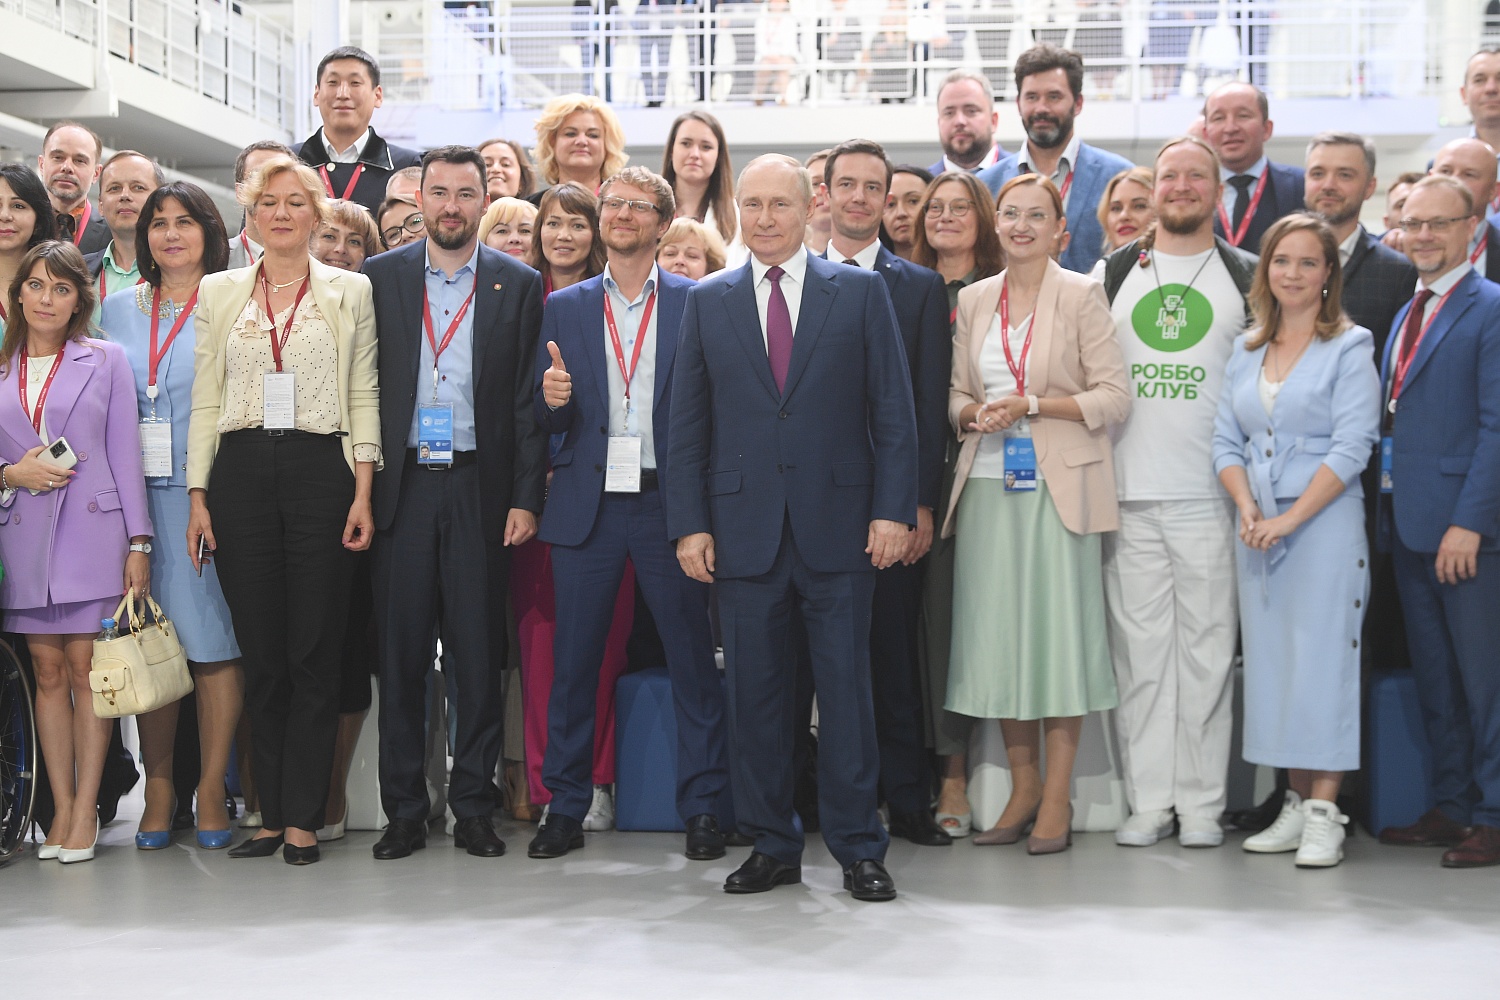 Владимиру Путину представили технологические проекты на форуме «Сильные идеи для нового времени»